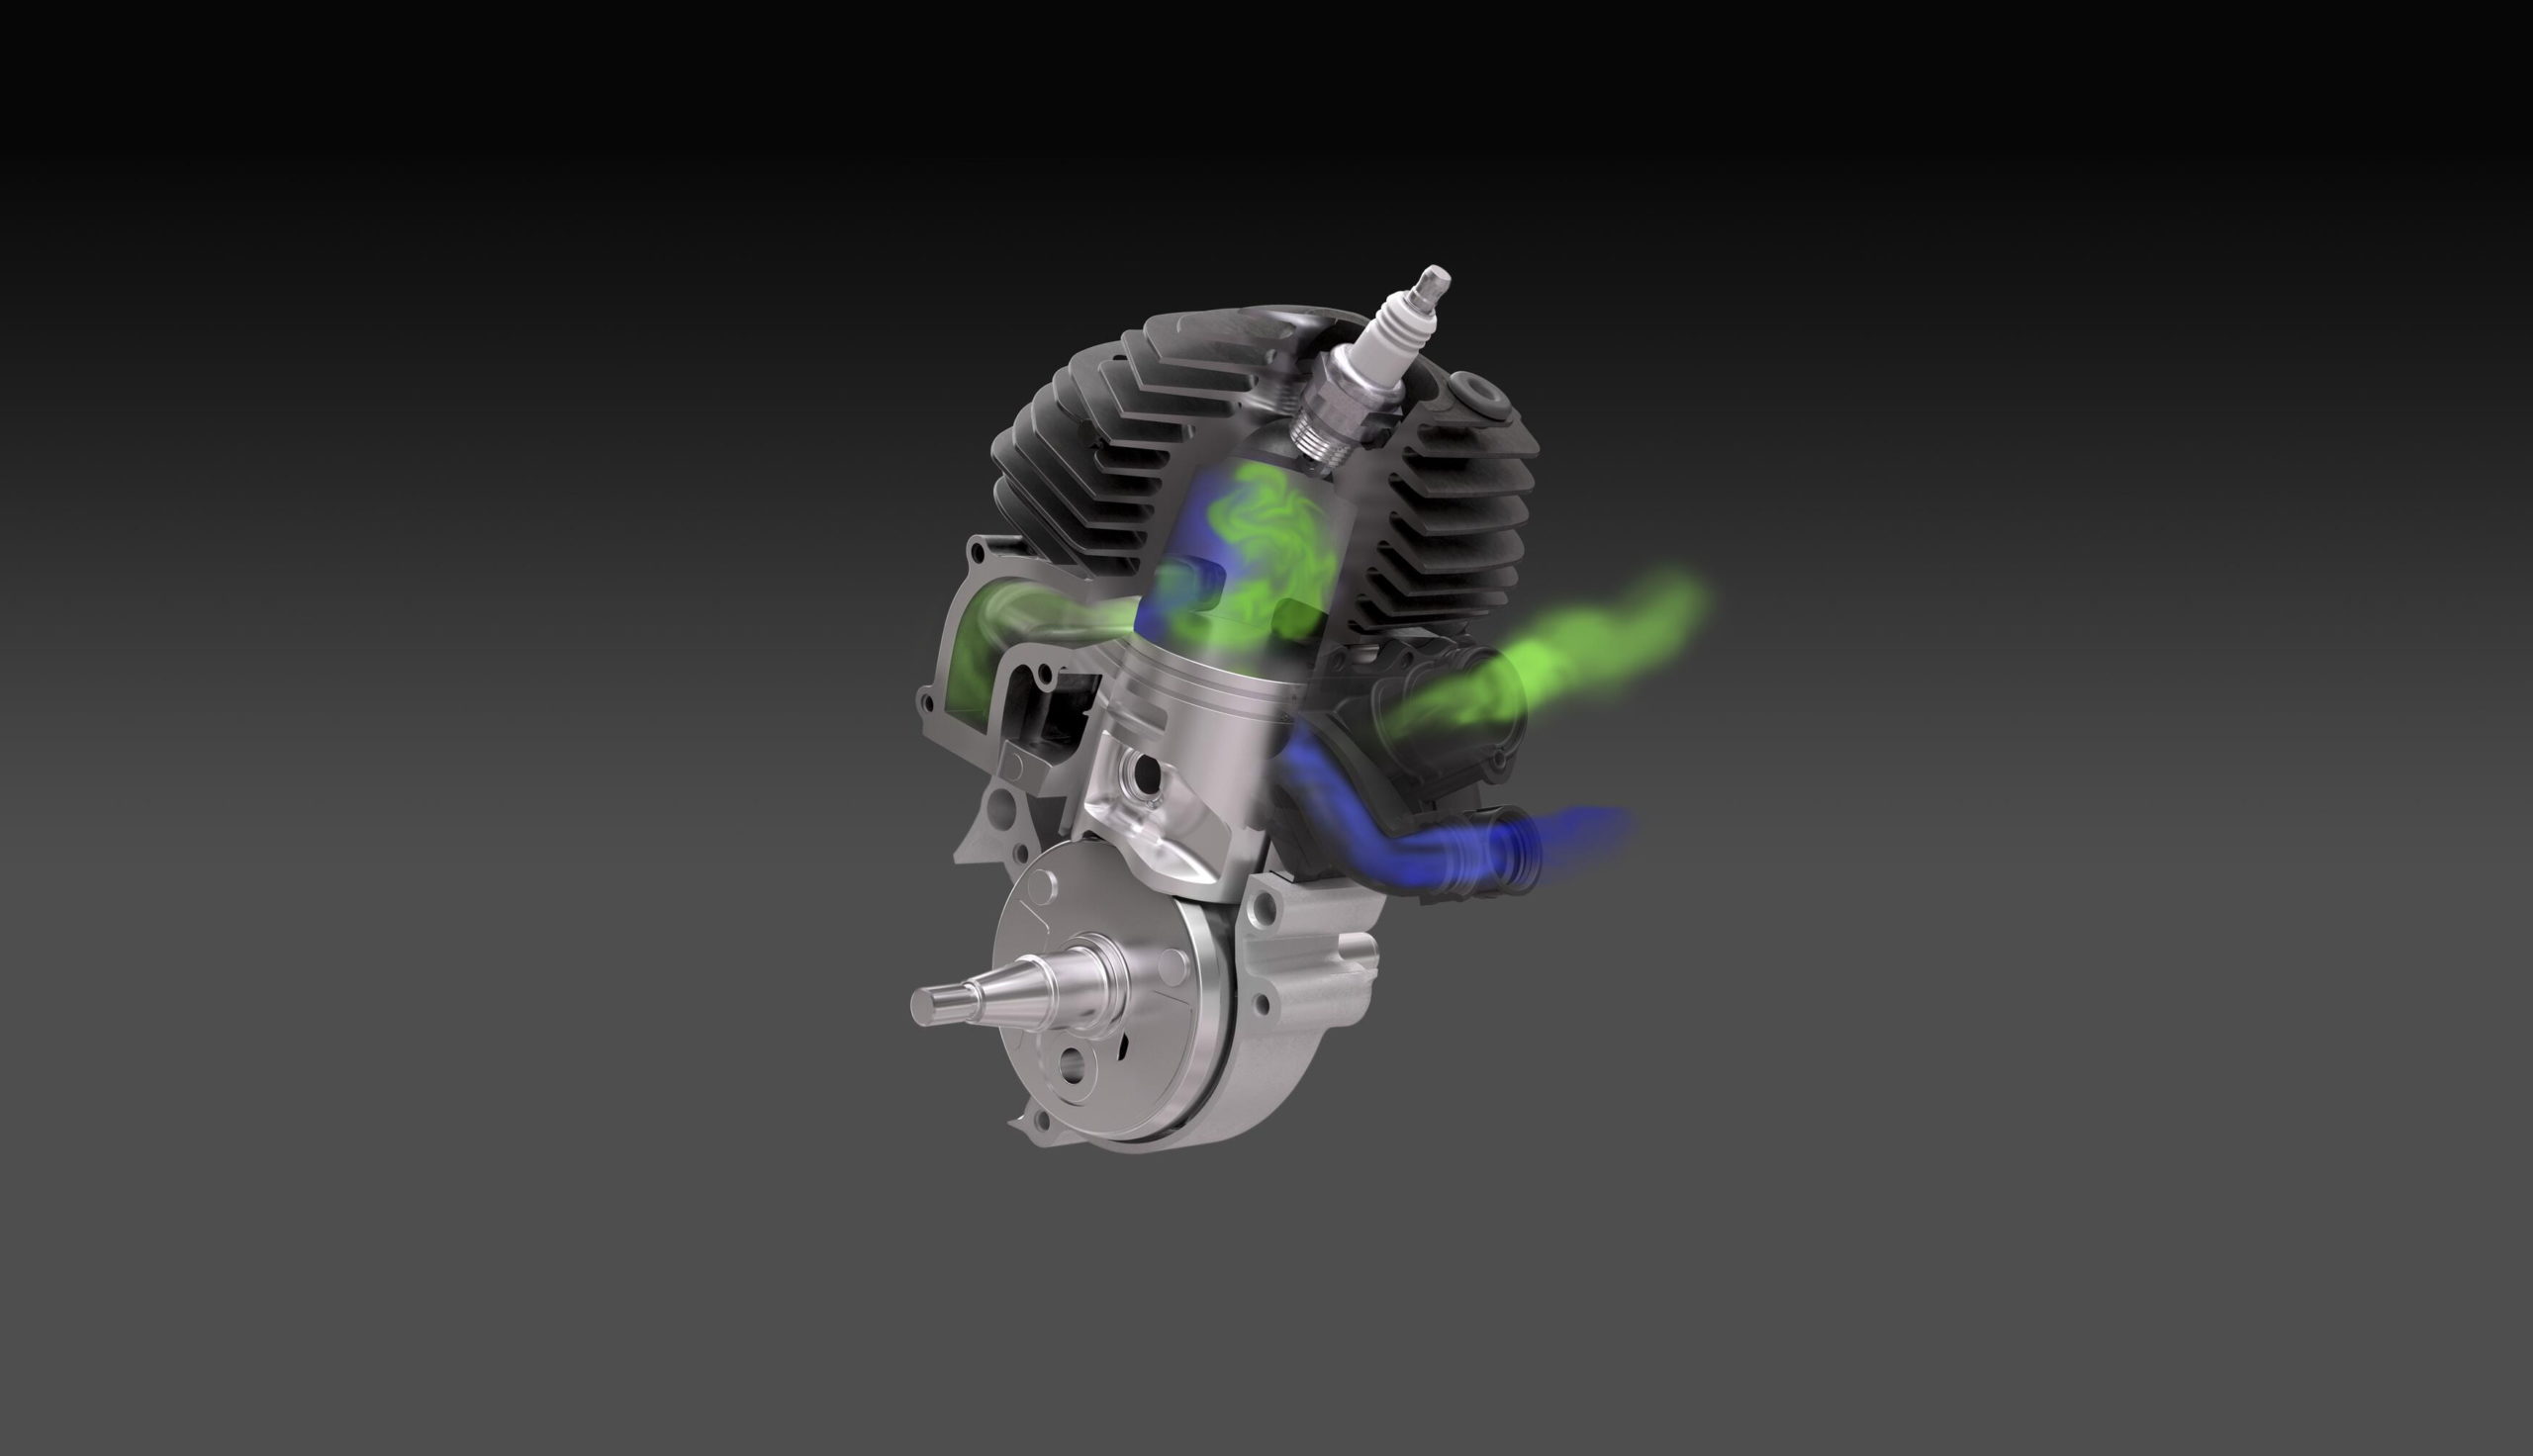  X-Torq®-moottori vähentää päästöjä ja polttoaineenkulutusta